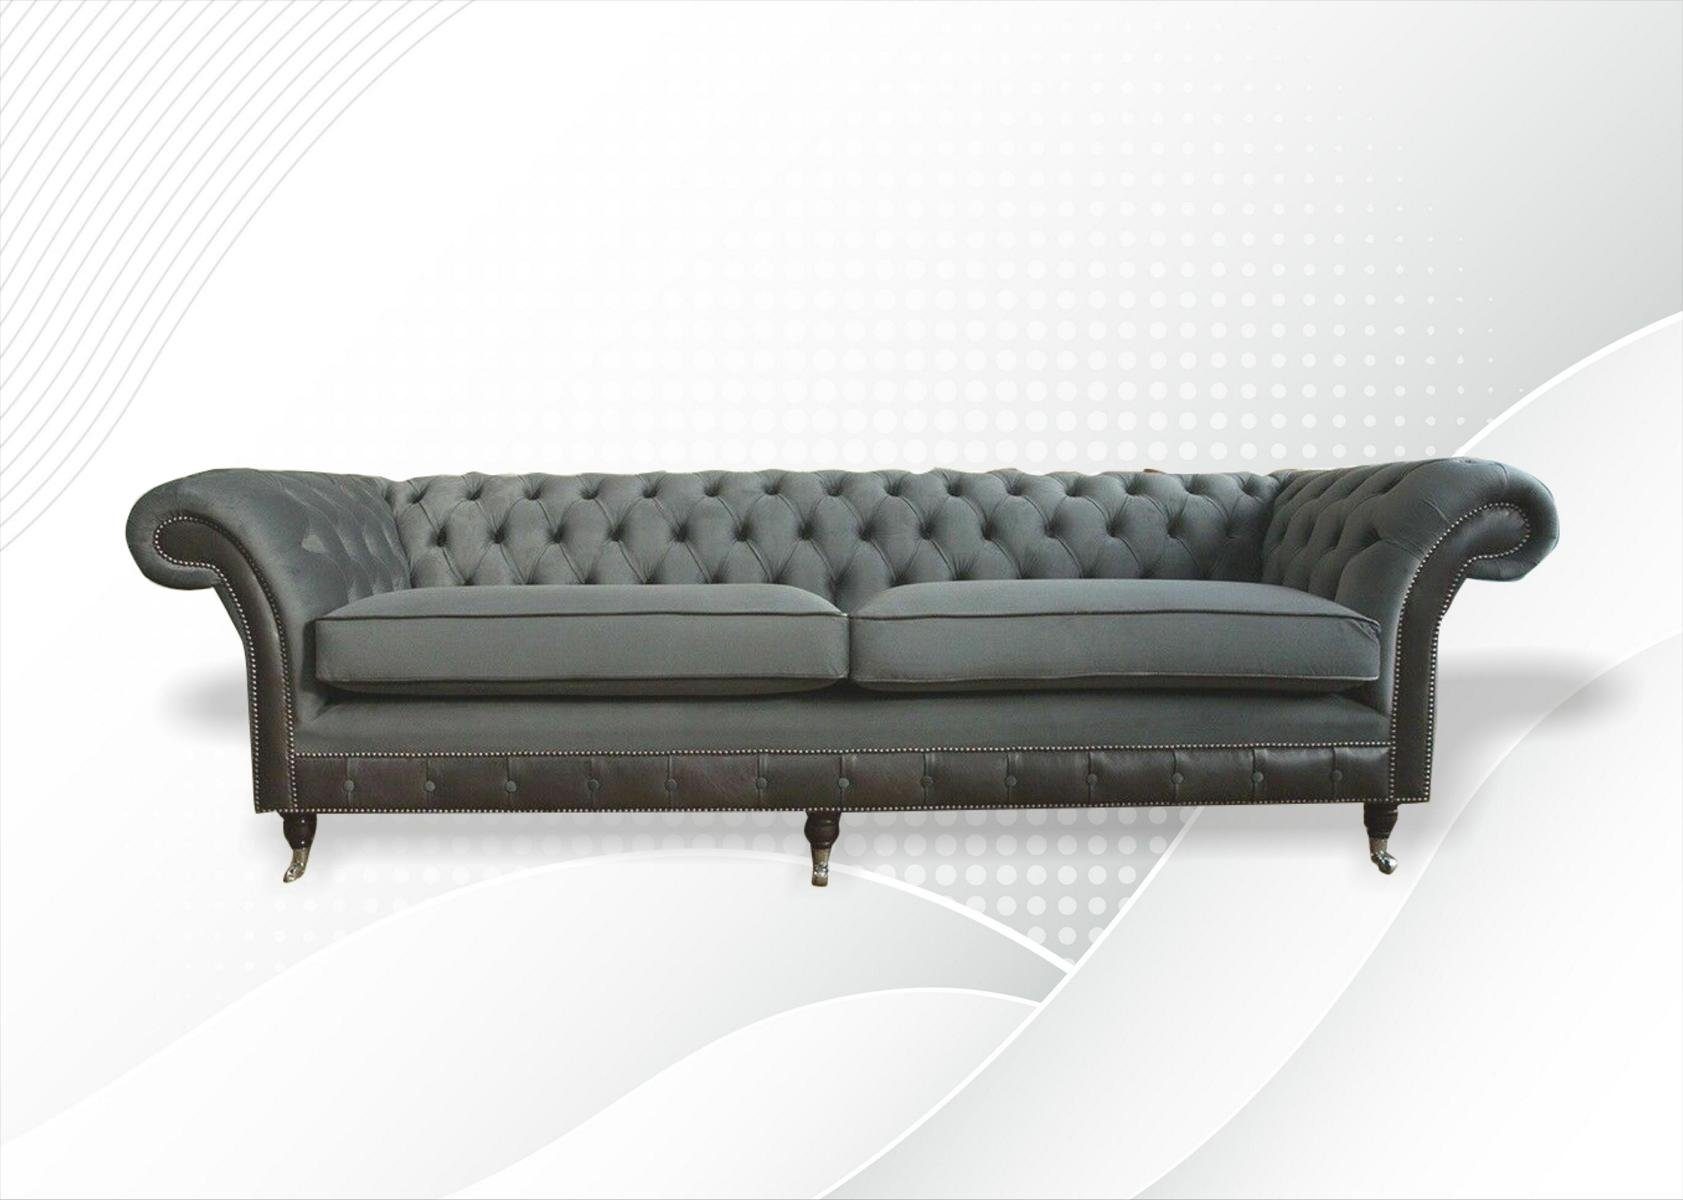 JVmoebel Sofa, Chesterfield Original Möbel 4 Sitzer Couch Polster Sofas Couchen